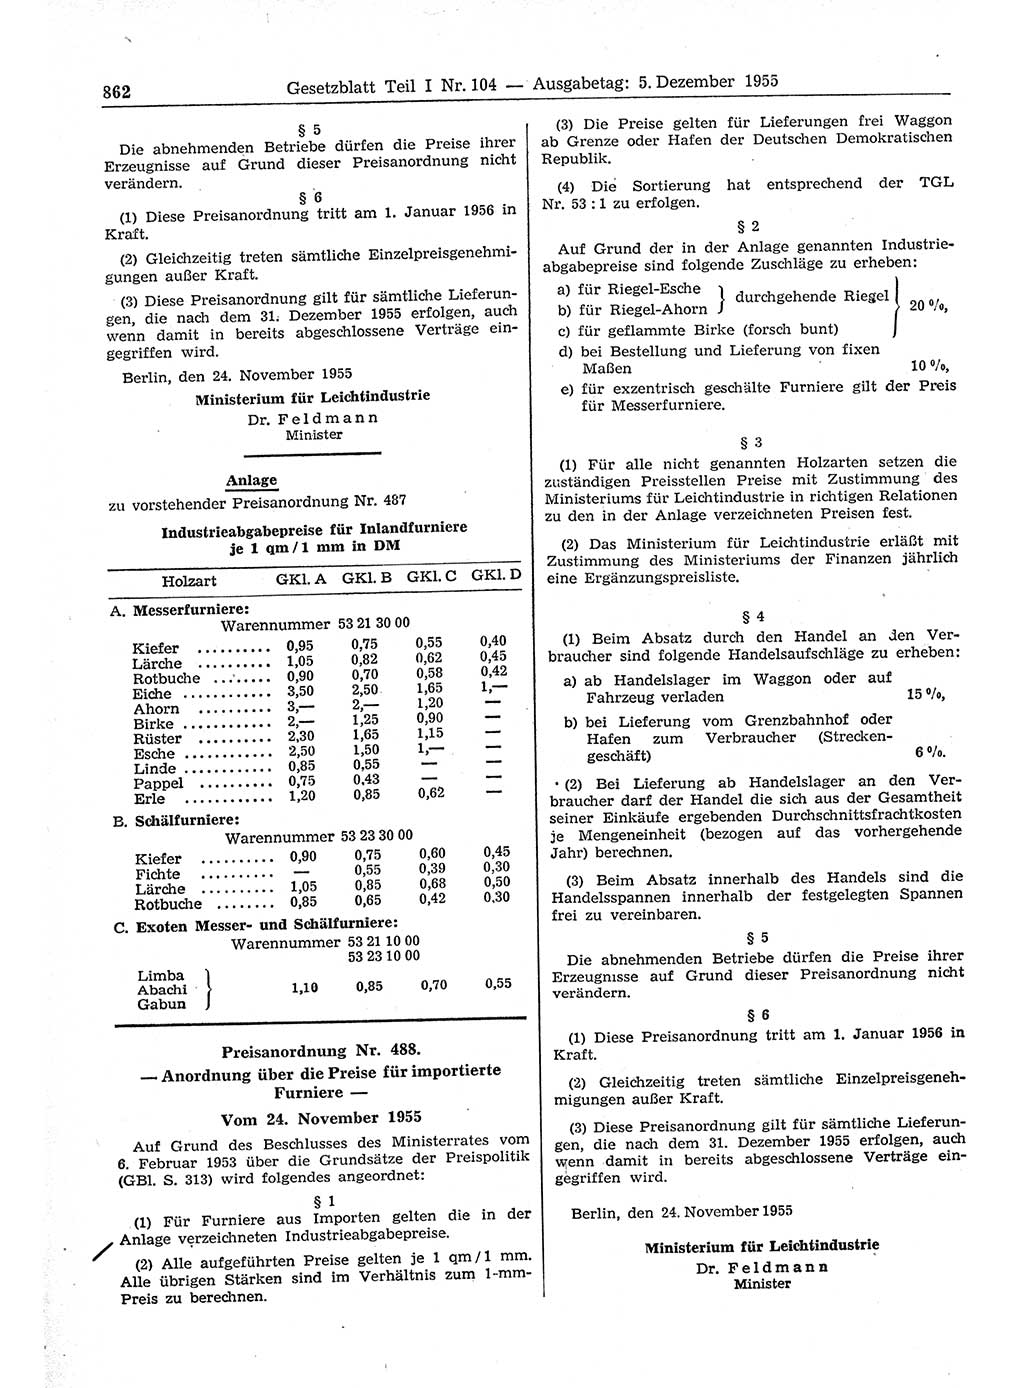 Gesetzblatt (GBl.) der Deutschen Demokratischen Republik (DDR) Teil Ⅰ 1955, Seite 862 (GBl. DDR Ⅰ 1955, S. 862)